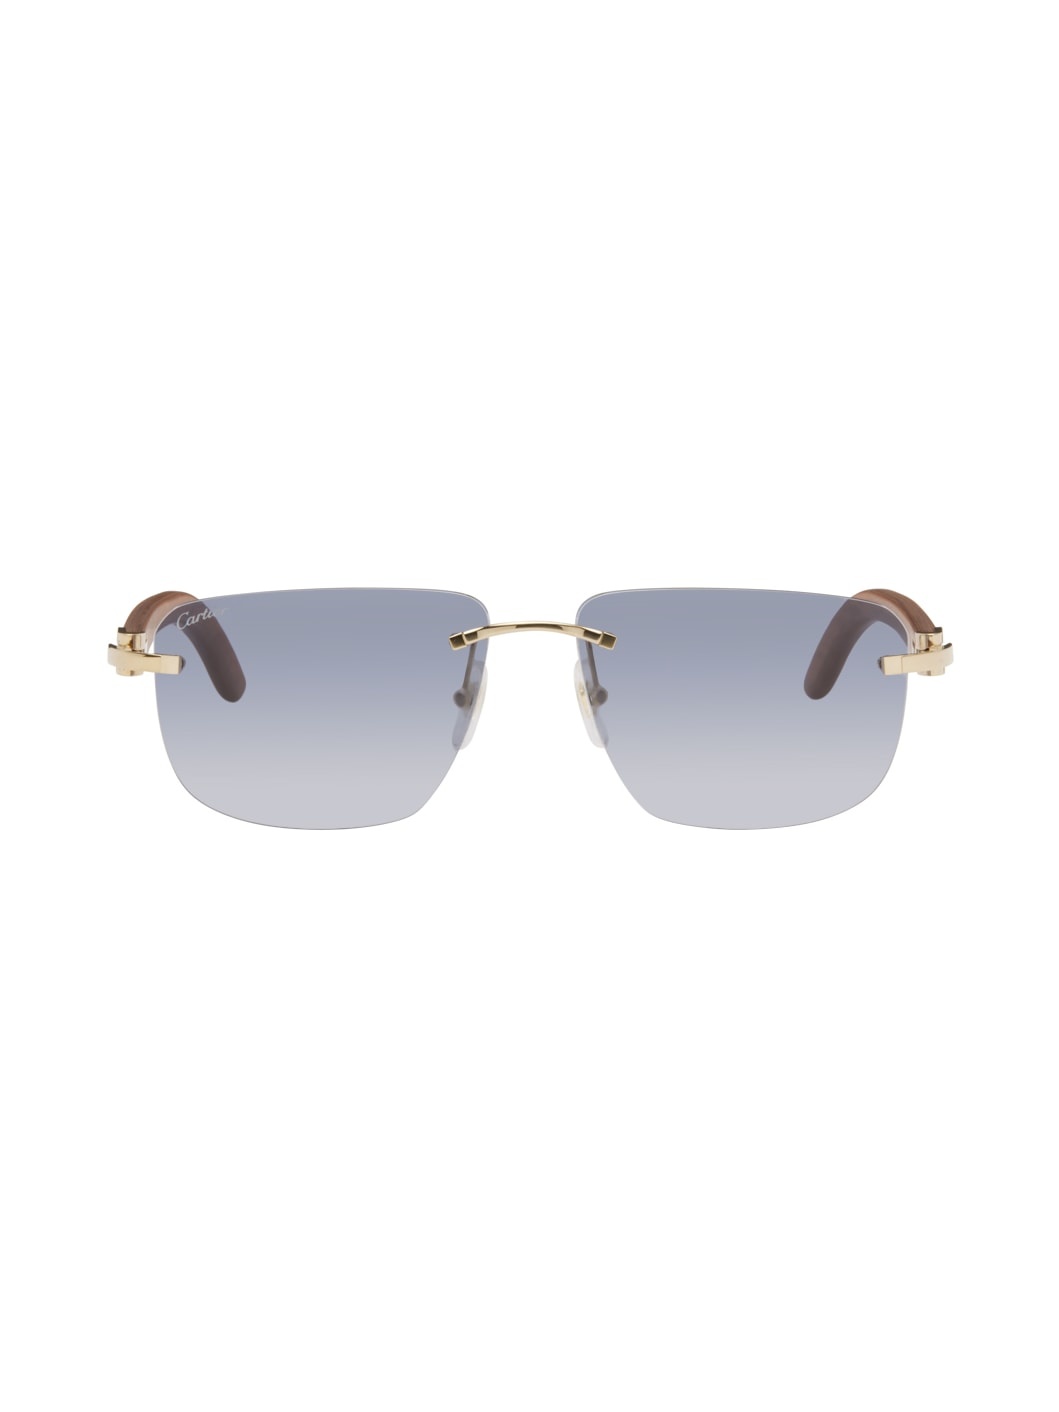 Brown & Gold Square Sunglasses - 1